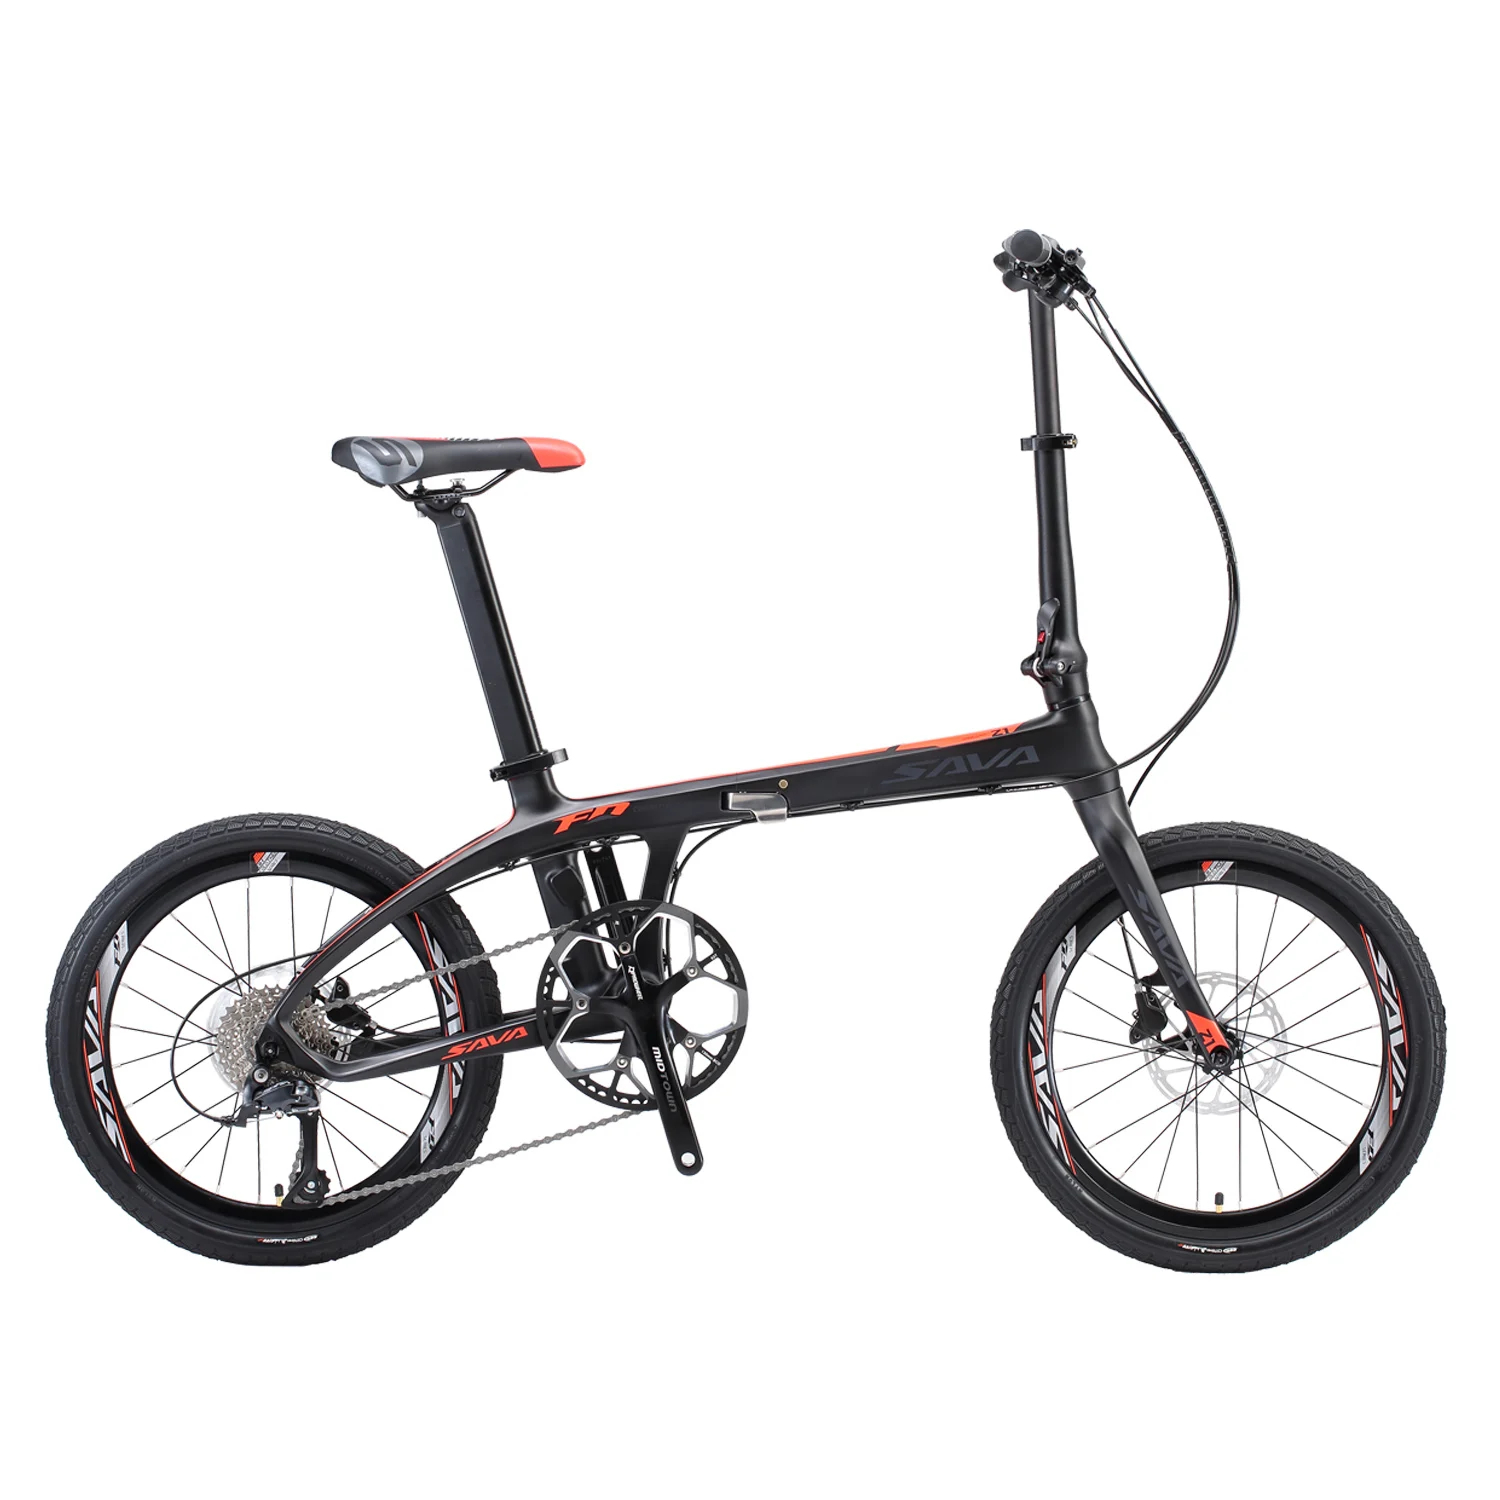 Carhon fiber складной велосипед 20 дюймов складной велосипед 20 дюймов SAVA карбоновый велосипед складной мини карбоновый компактный городской велосипед складной